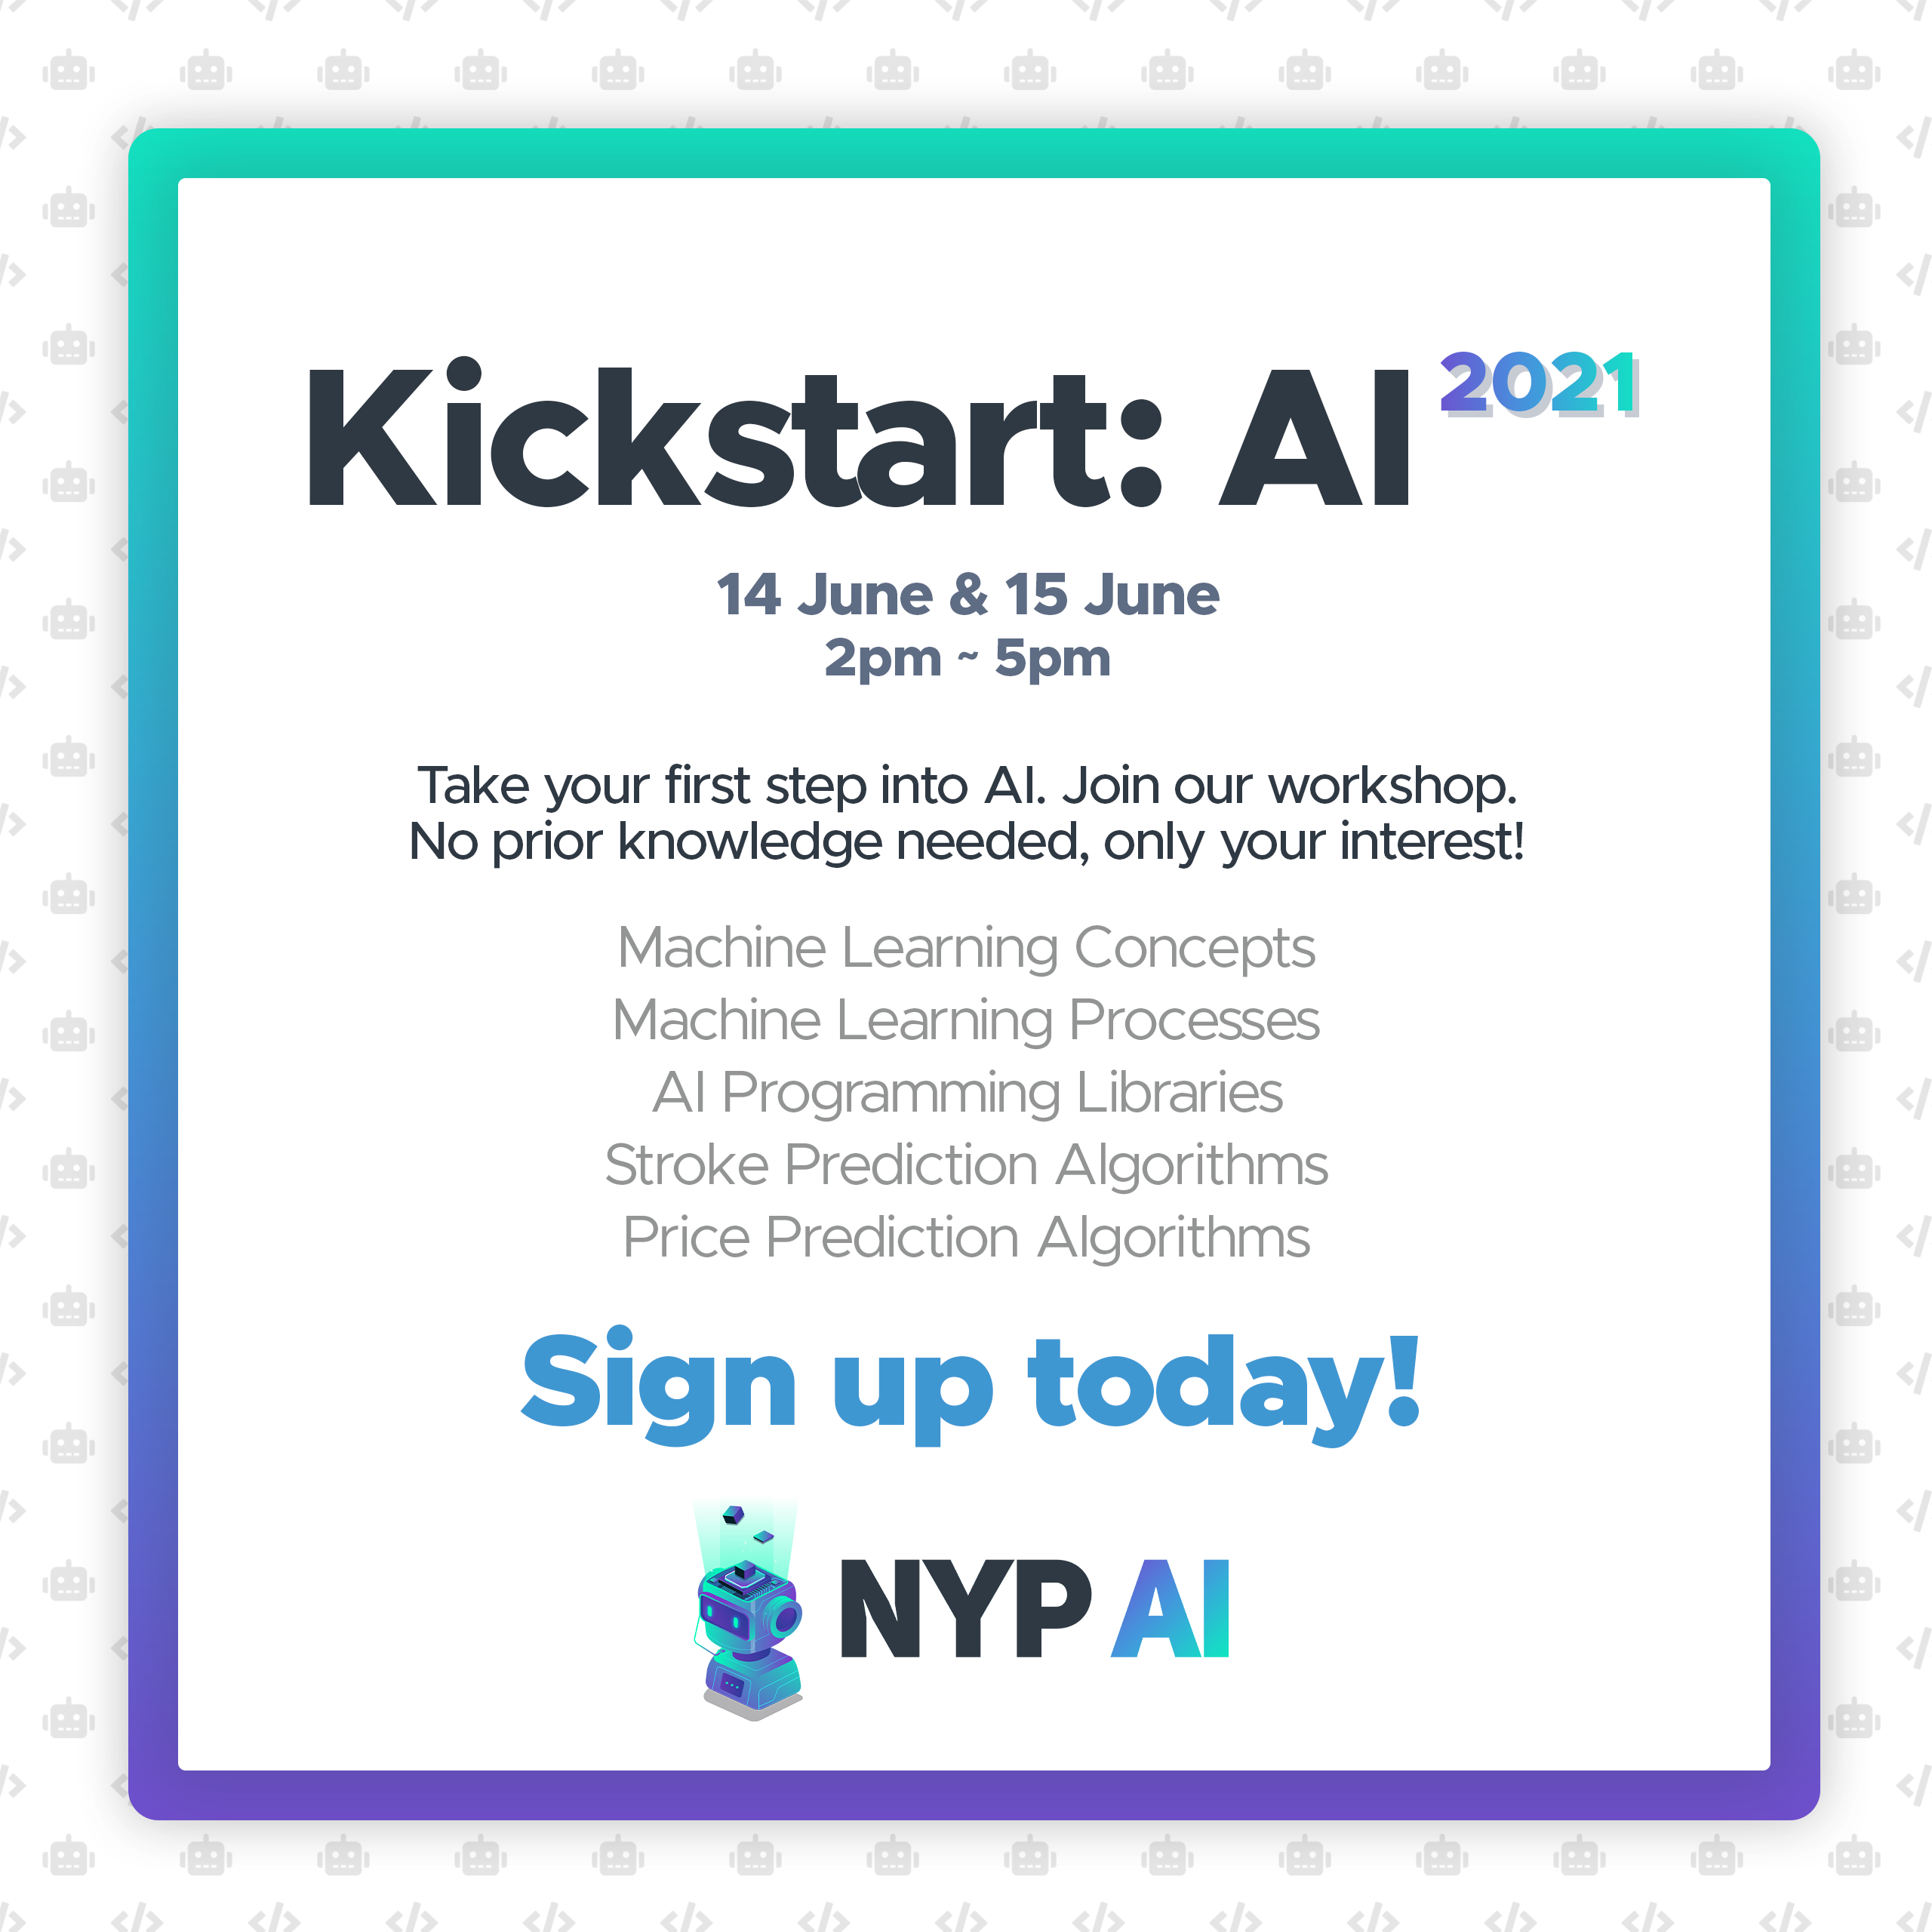 Kickstart: AI 2021